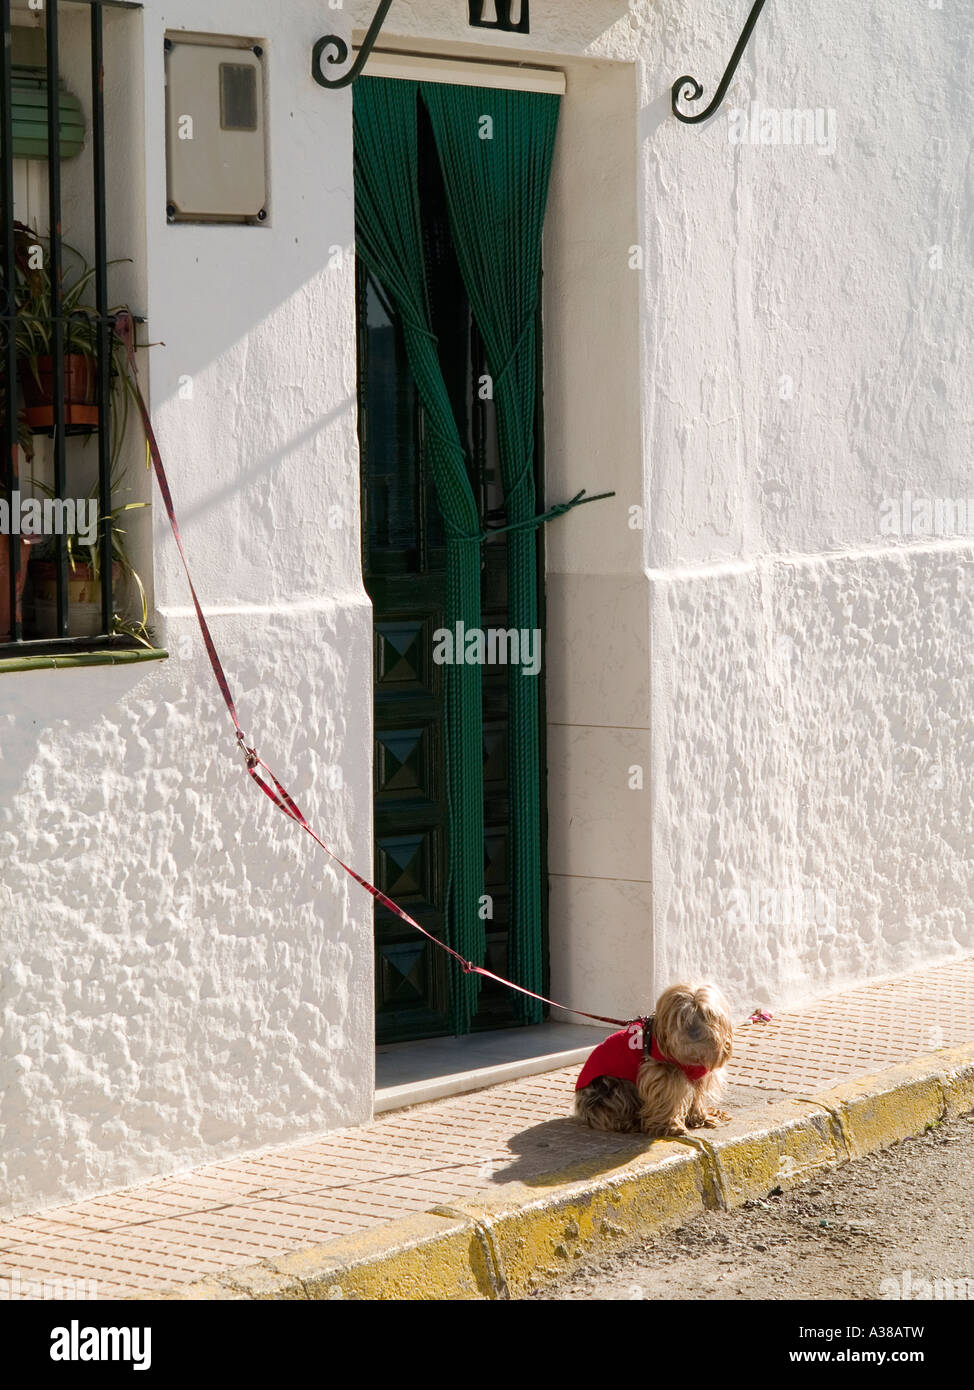 Un petit chien attaché à l'extérieur d'une maison à Istan près de Marbella Andalousie Espagne Banque D'Images